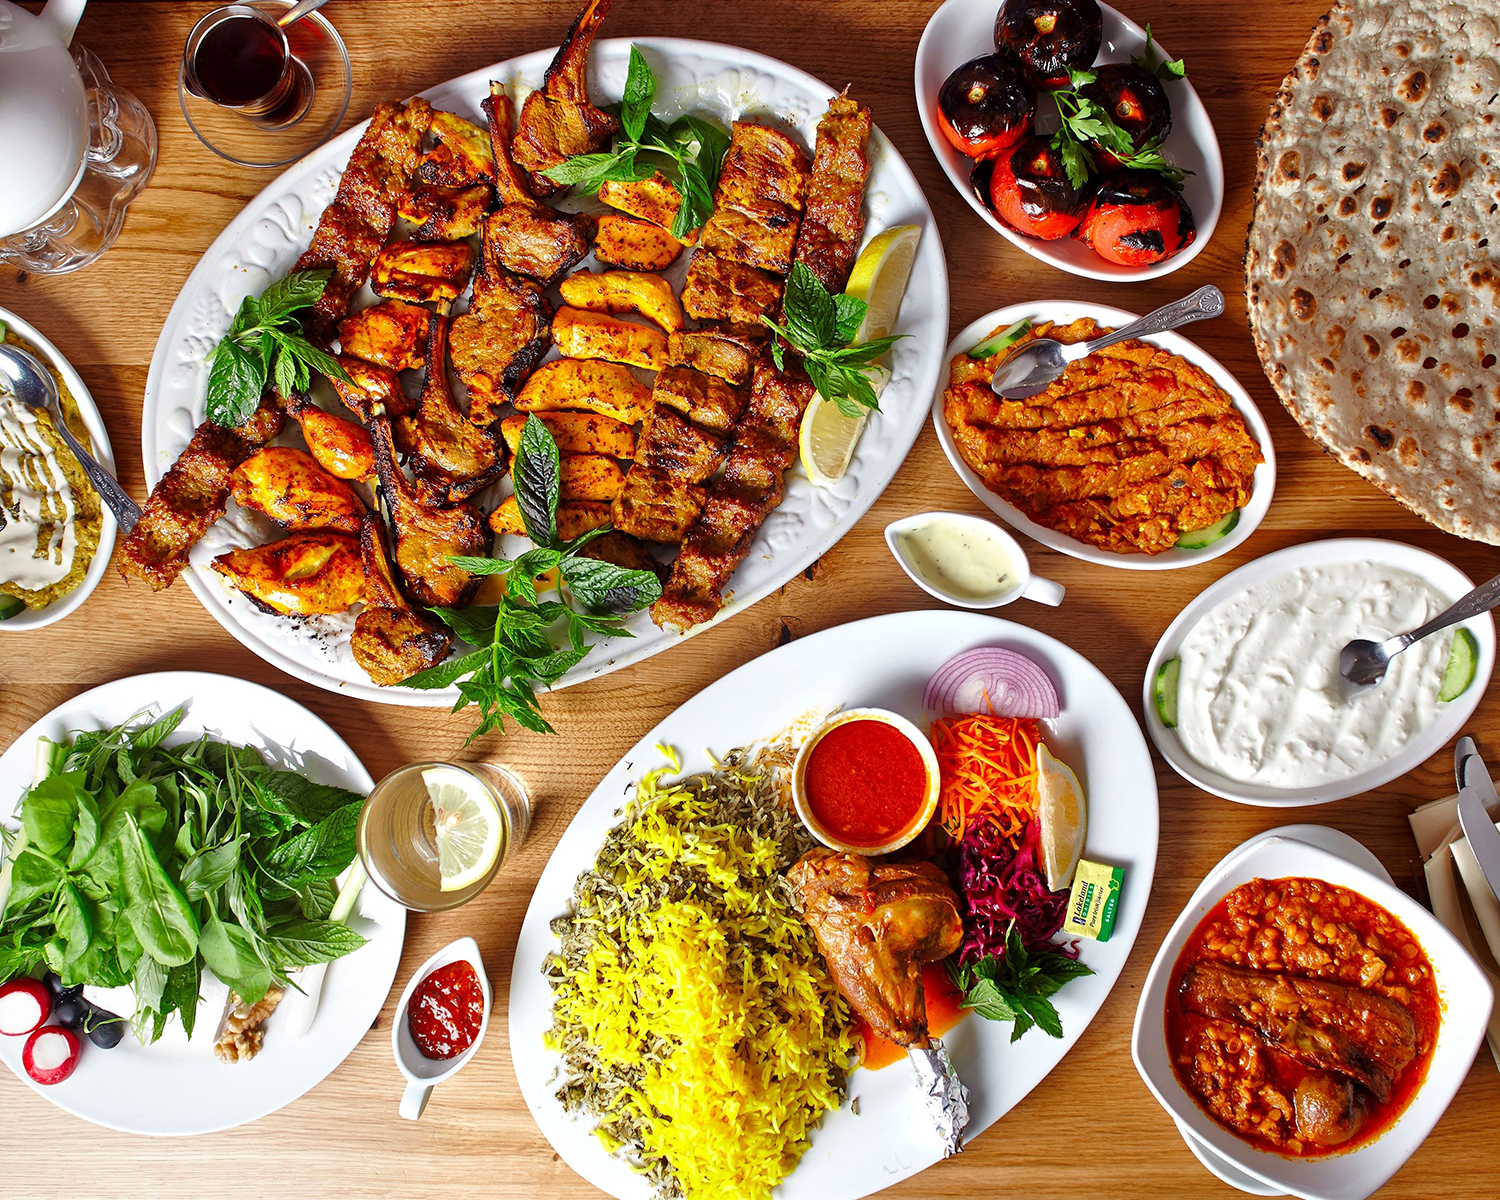 آنالیز غذا های ایرانی بیش از 100 غذا